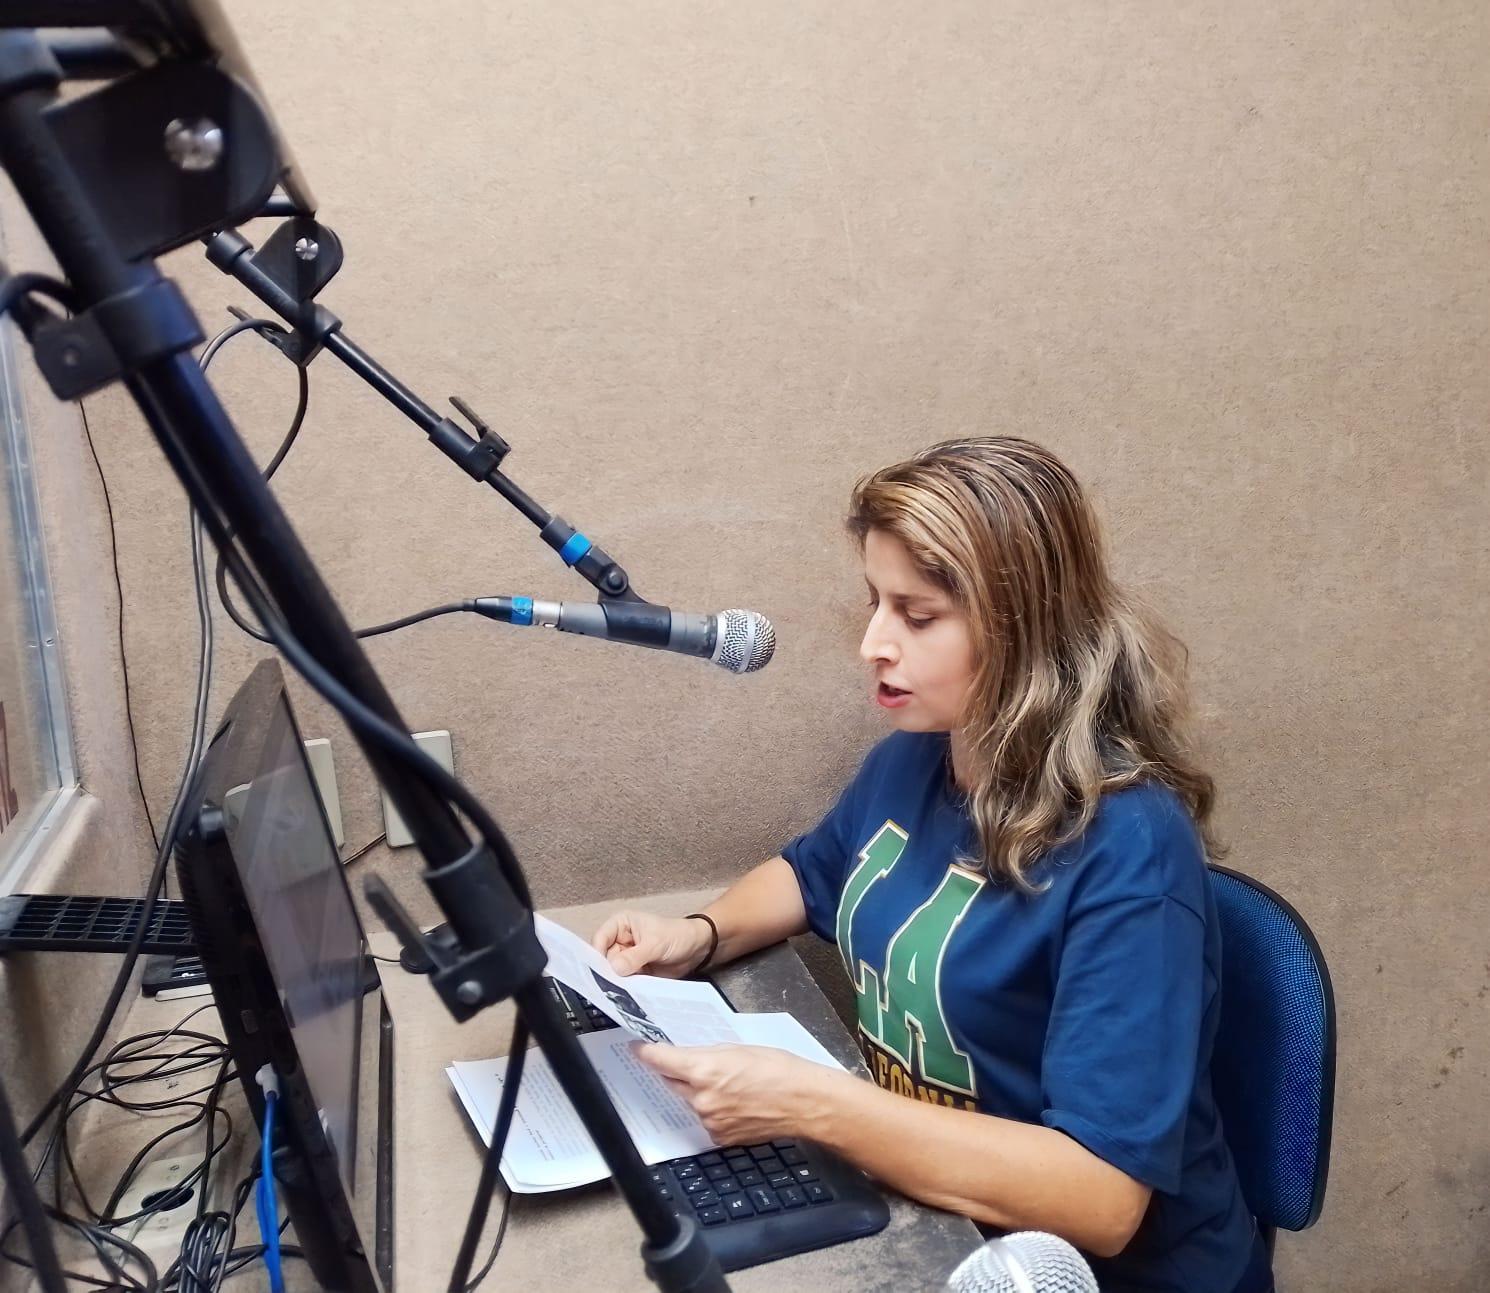 90% dos brasileiros consomem algum formato de áudio, como Rádio, streaming ou Podcast